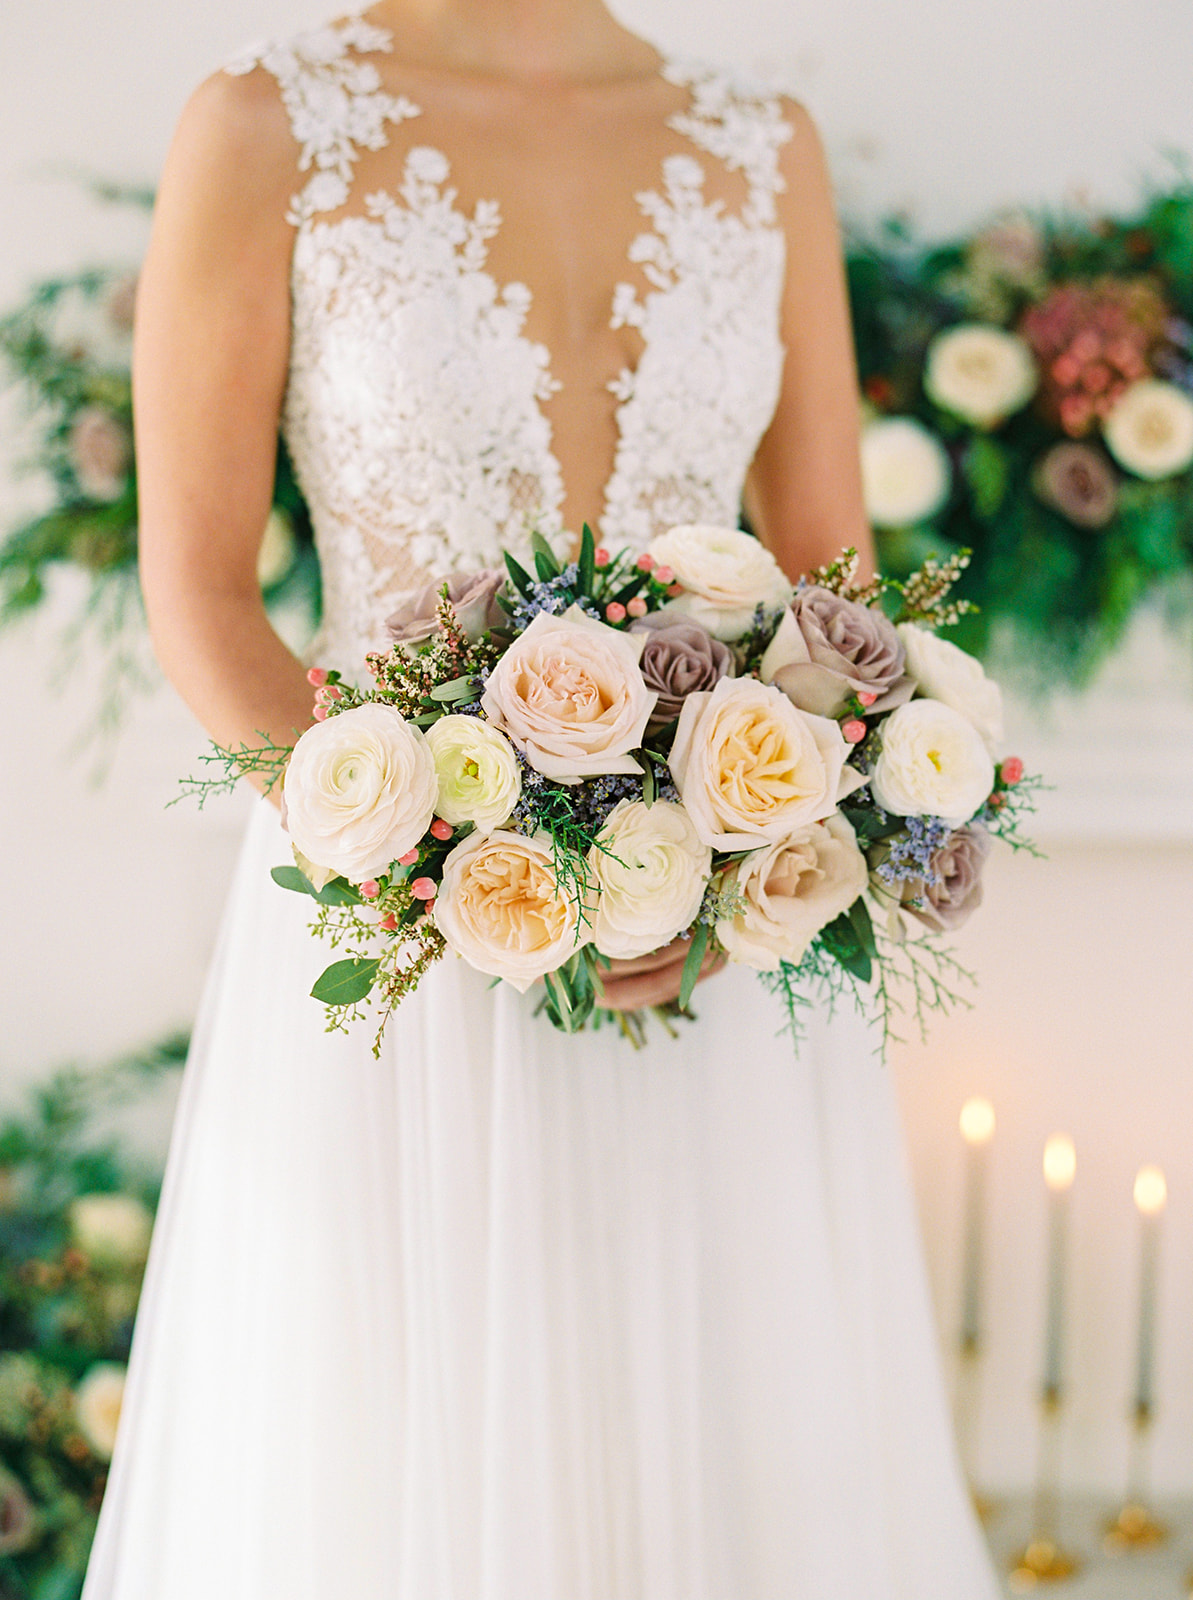 Stunning winter wedding inspired bouquet